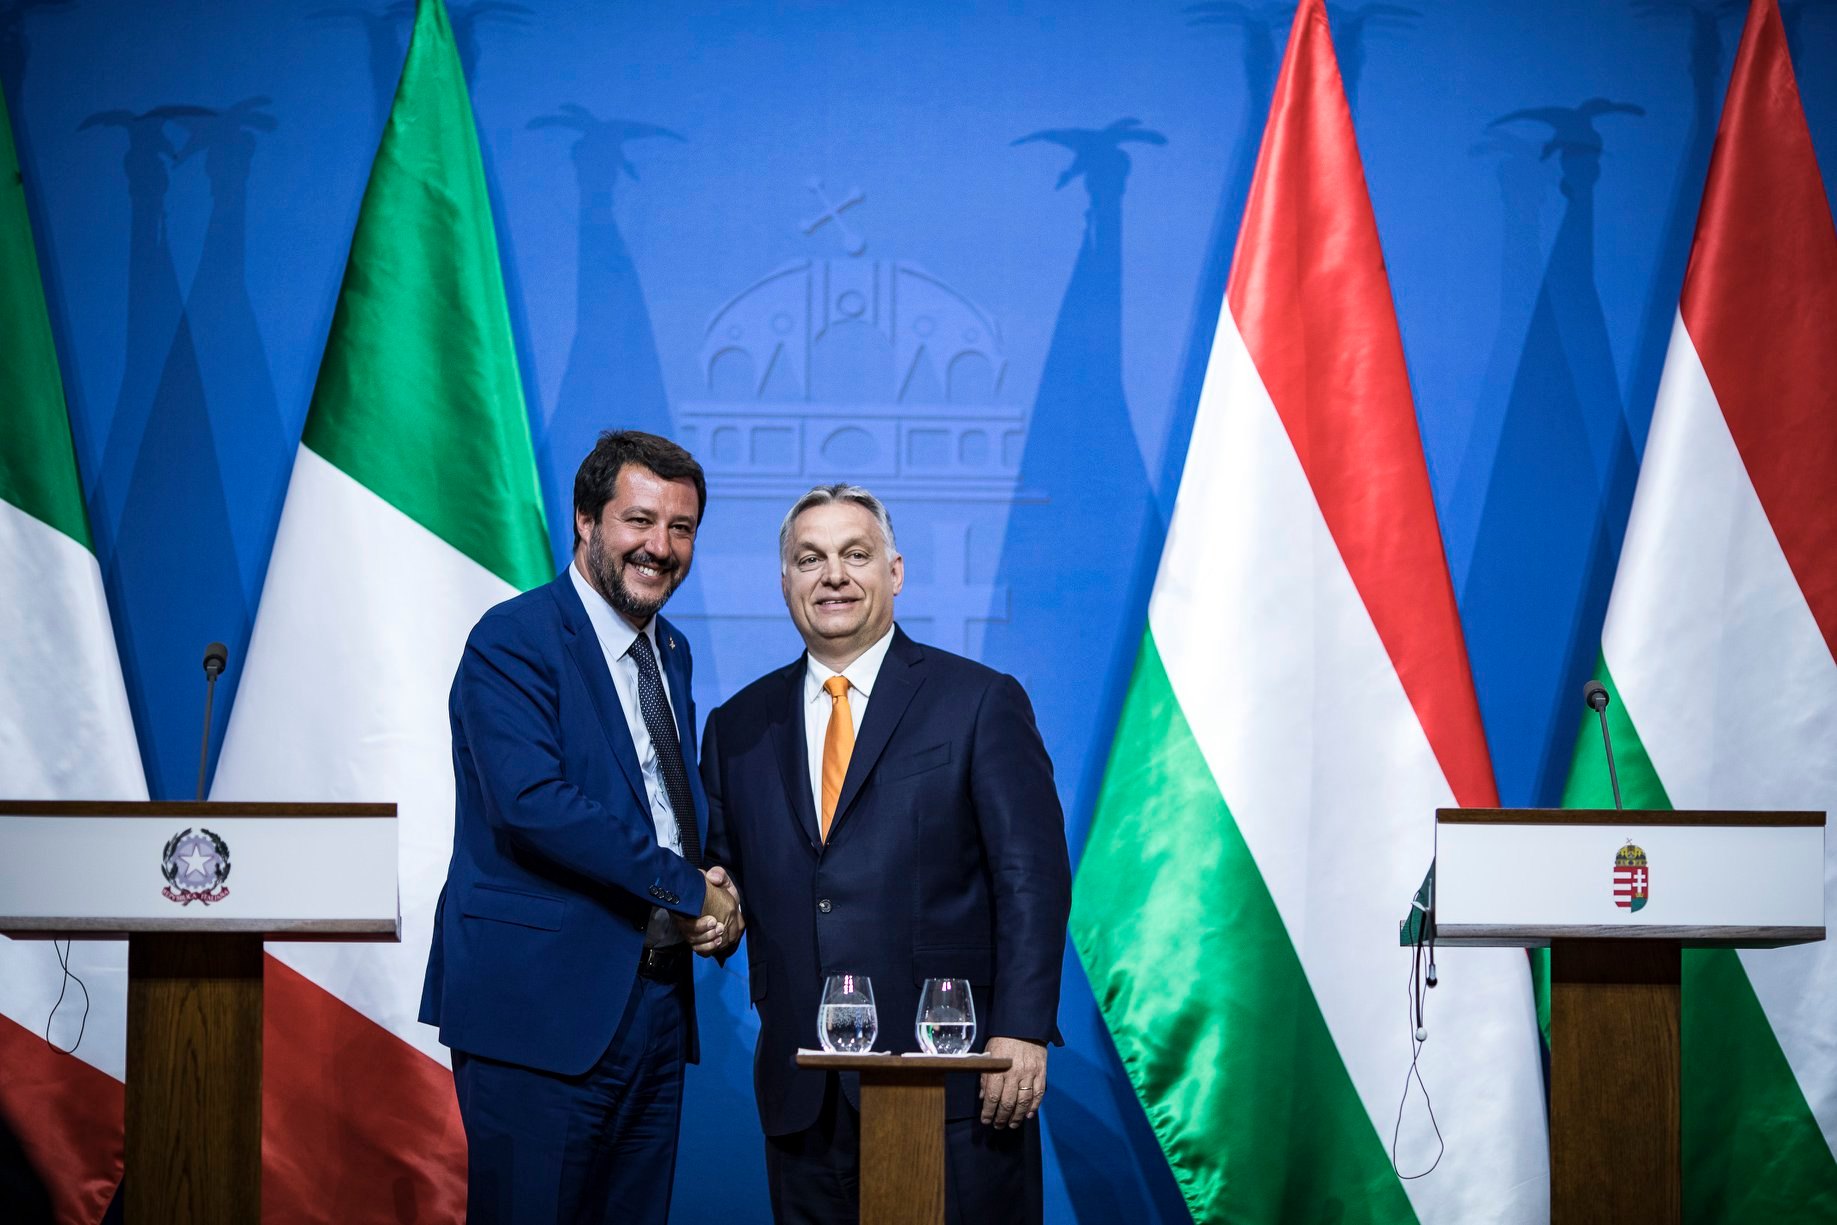 Cour Salvini Viktor Orbán